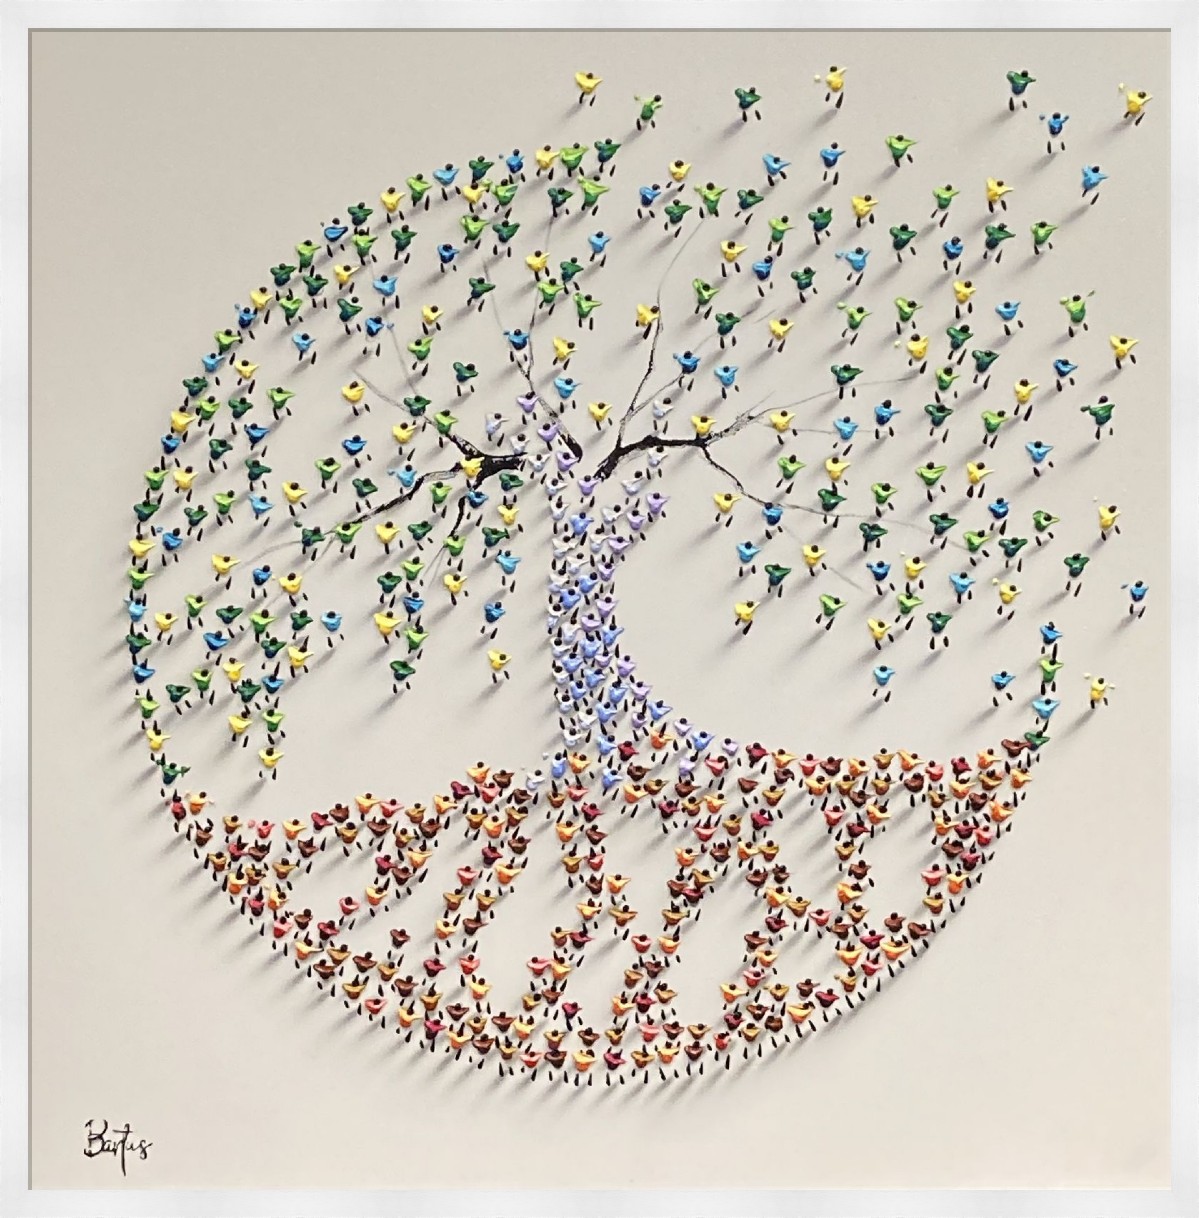 Tree of life V by Francisco Bartus